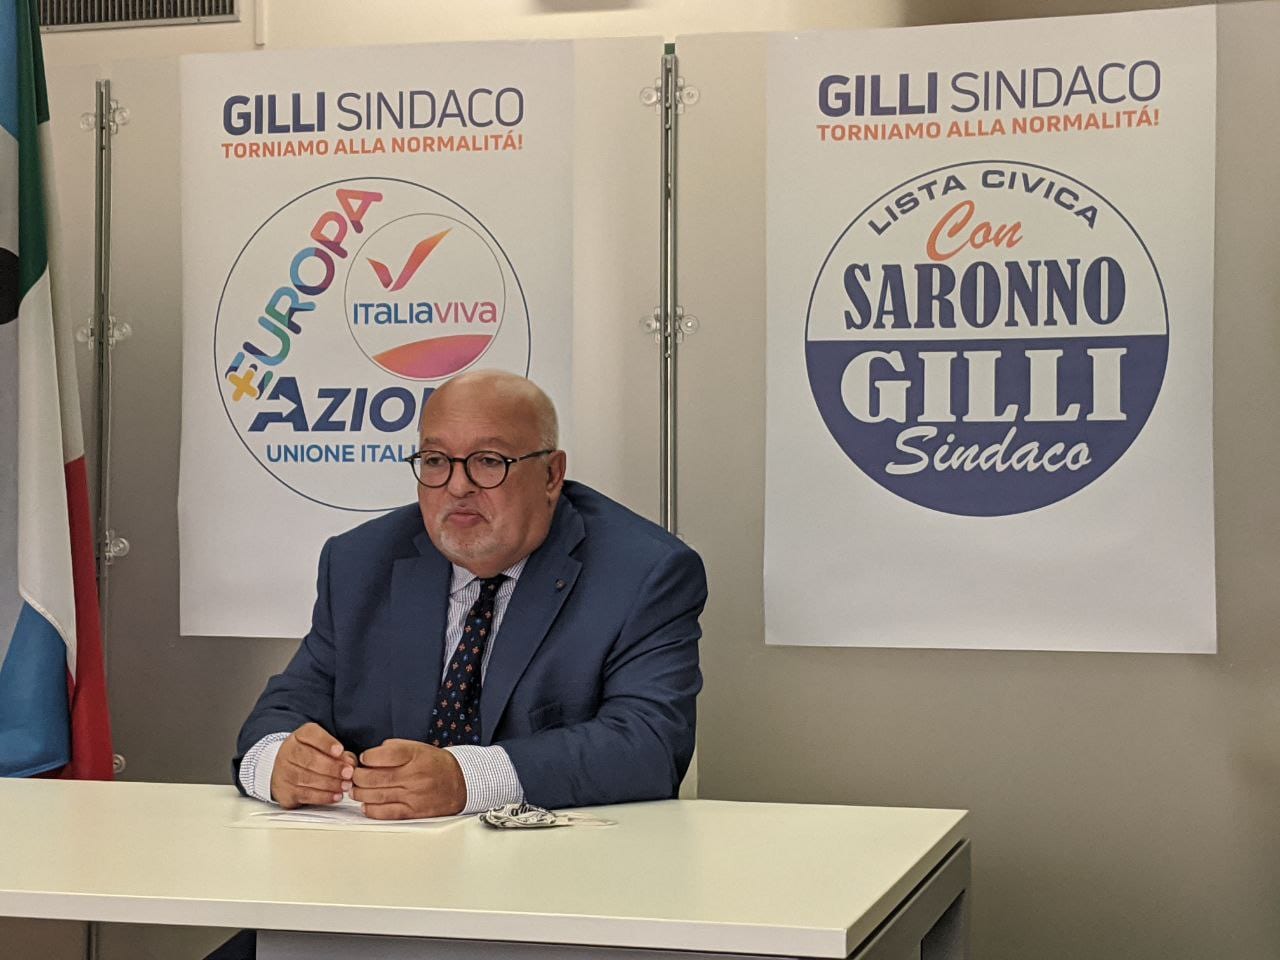 Gilli: “Reddito di cittadinanza e progetti di utilità collettiva perchè, a differenza di Caronno e Gerenzano, a Saronno non ci sono?”